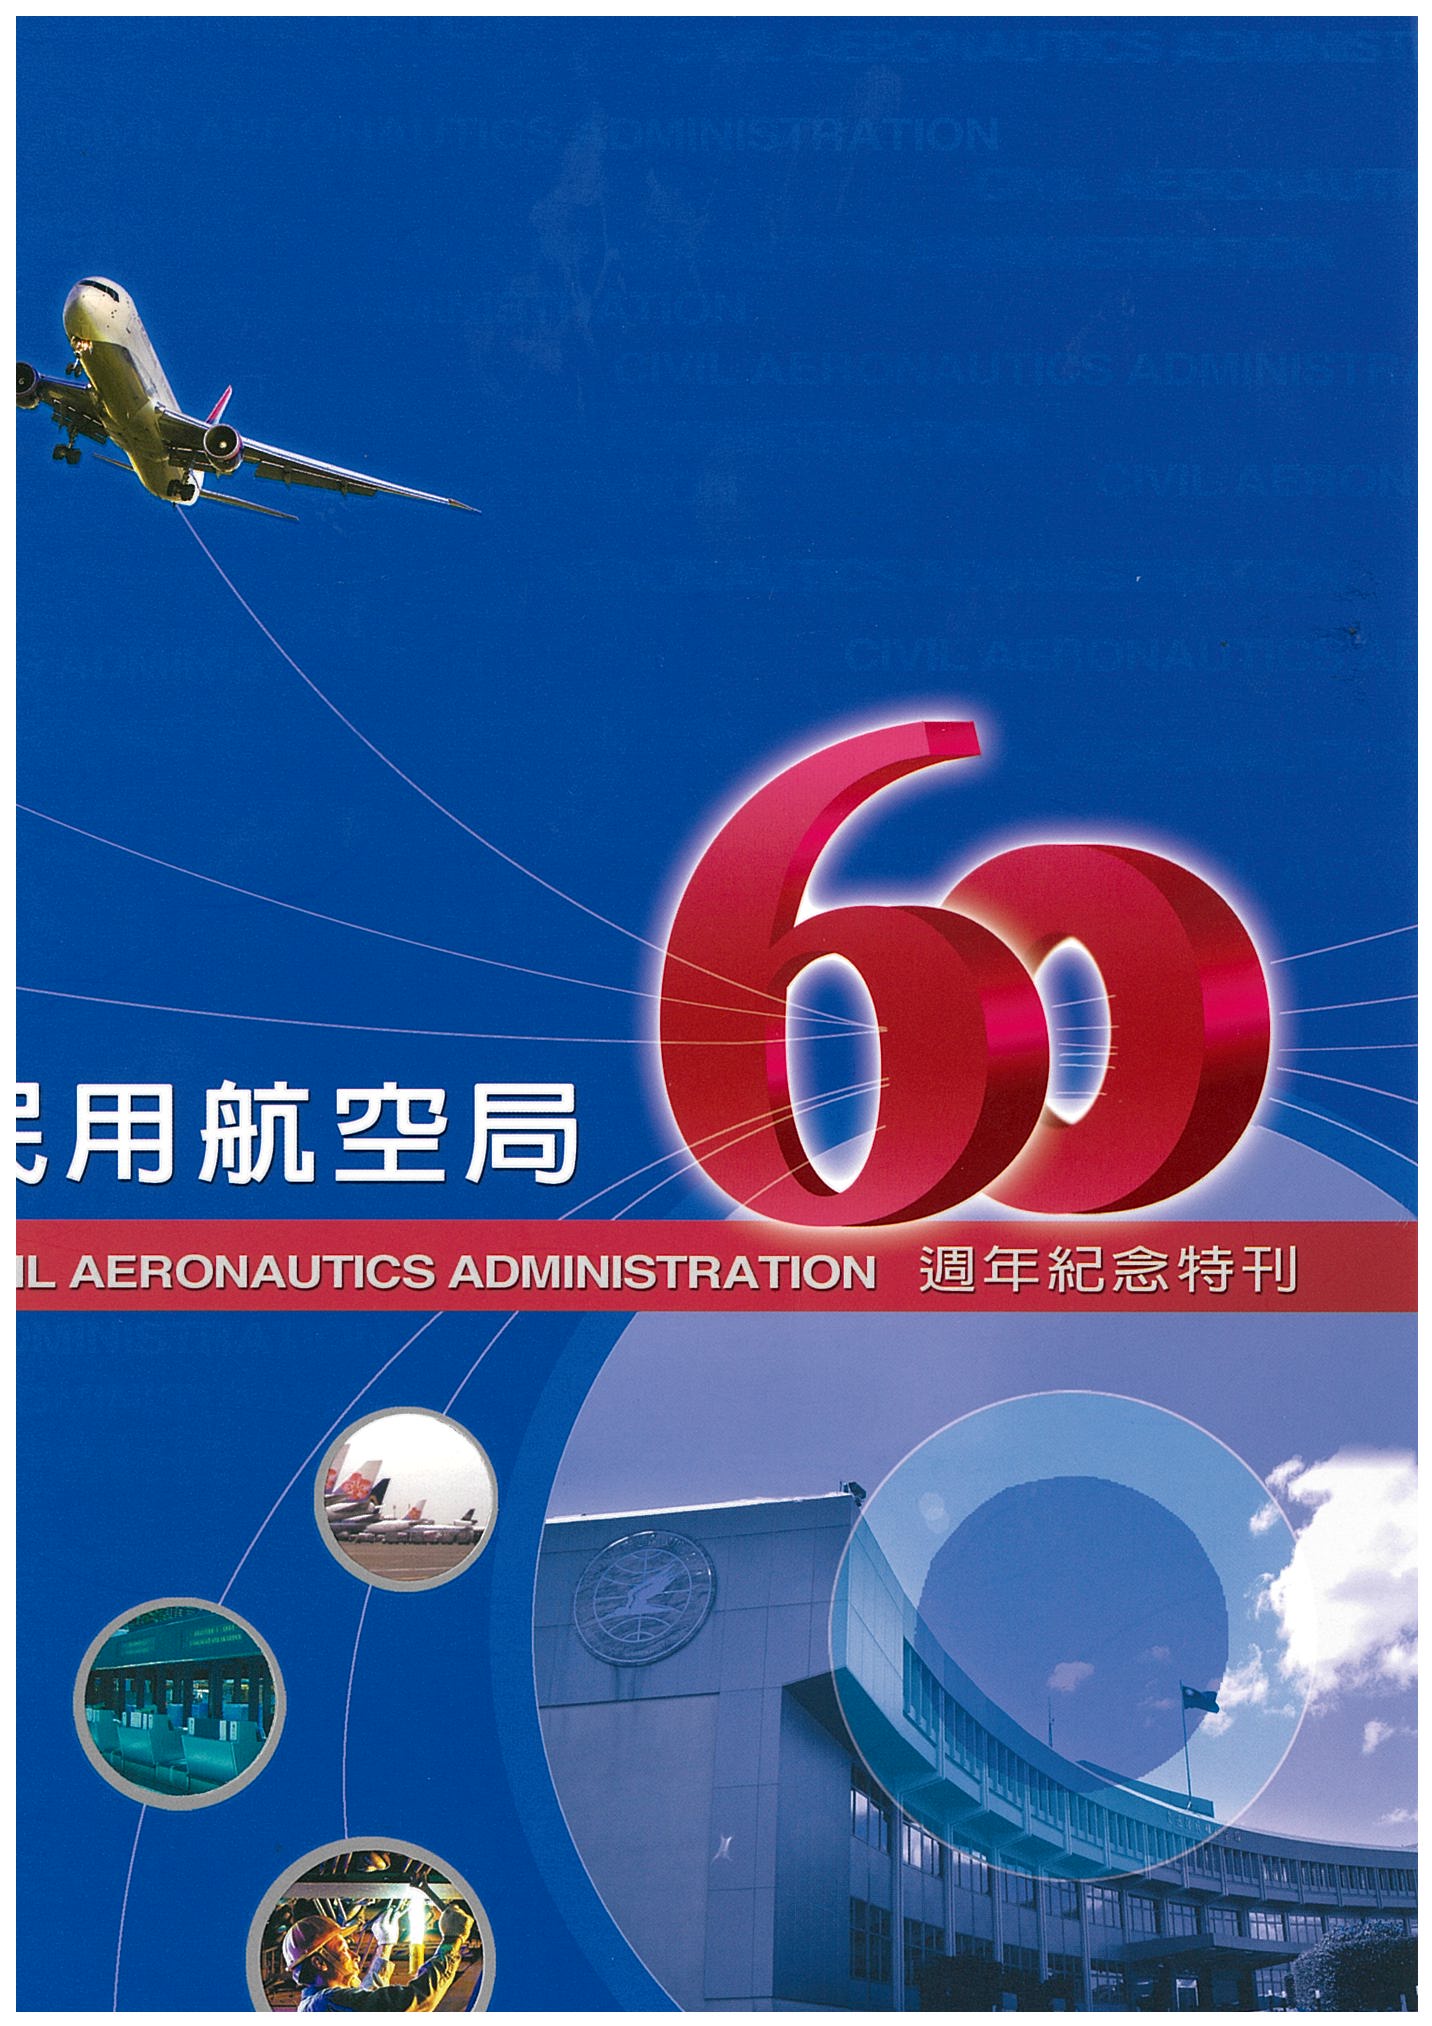 交通部民用航空局60週年紀念特刊封面